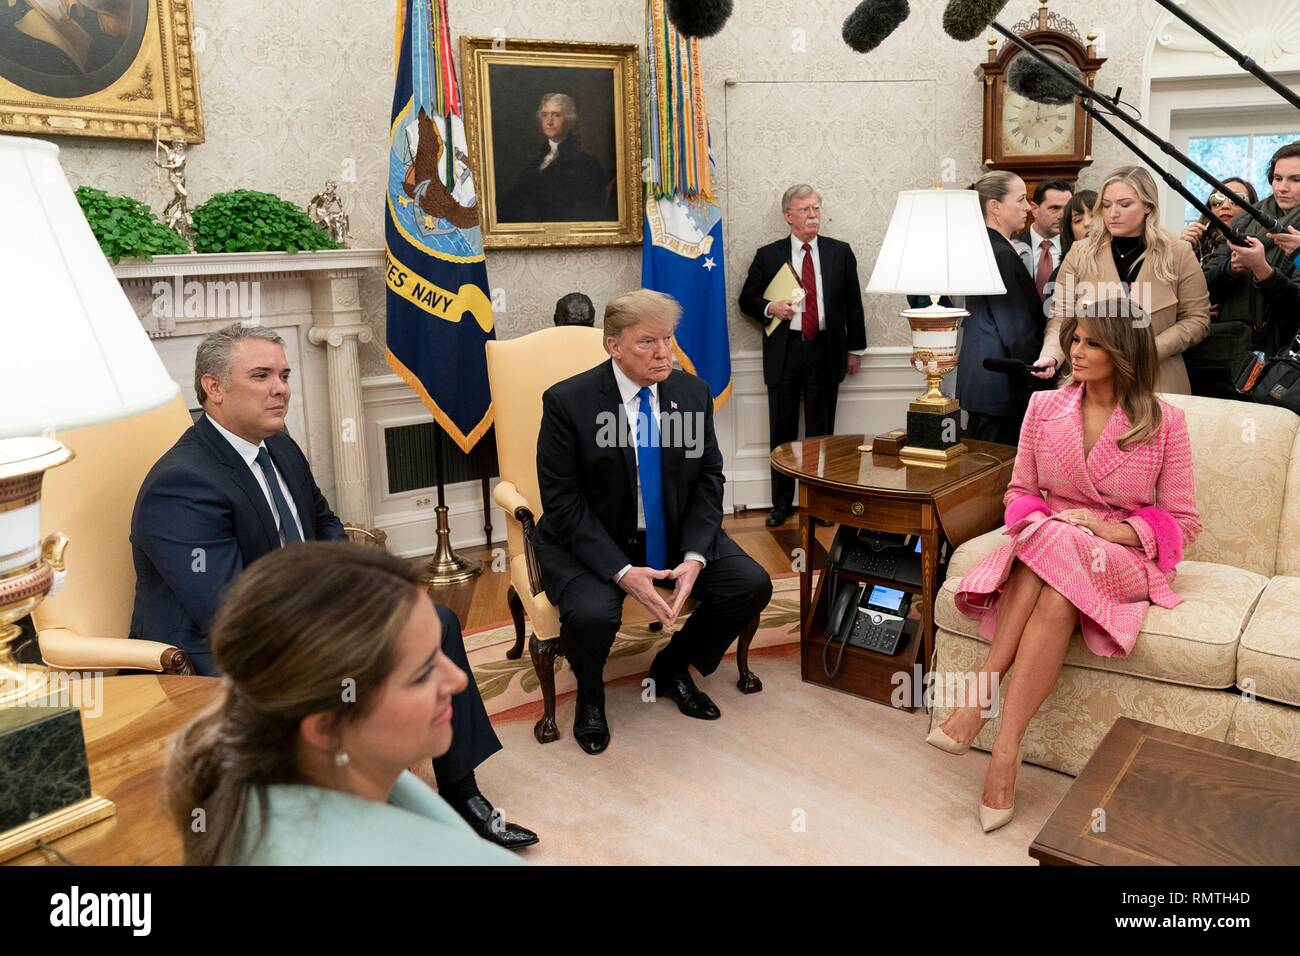 Us-Präsident Donald Trump und First Lady Melania Trump Treffen mit kolumbianischen Präsident Ivan Duque Marquez und seine Frau Maria Juliana Ruiz im Oval Office des Weißen Hauses Februar 13, 2019 in Washington, DC. Stockfoto